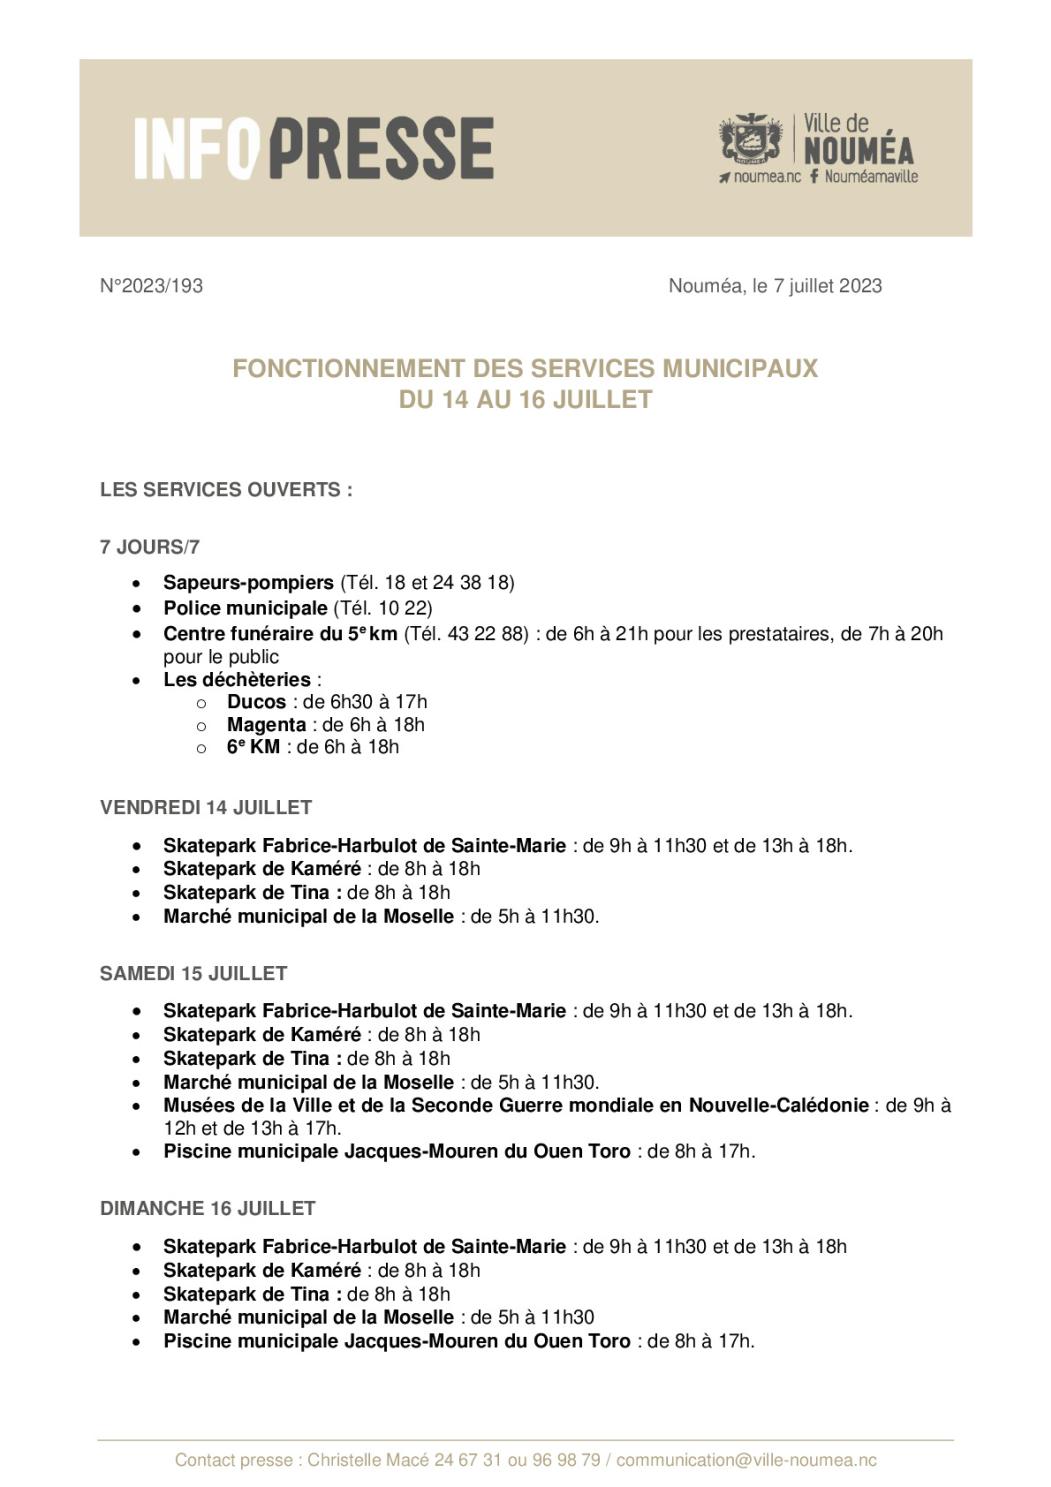 IP 193 Fonctionnement des services 14 juillet.pdf